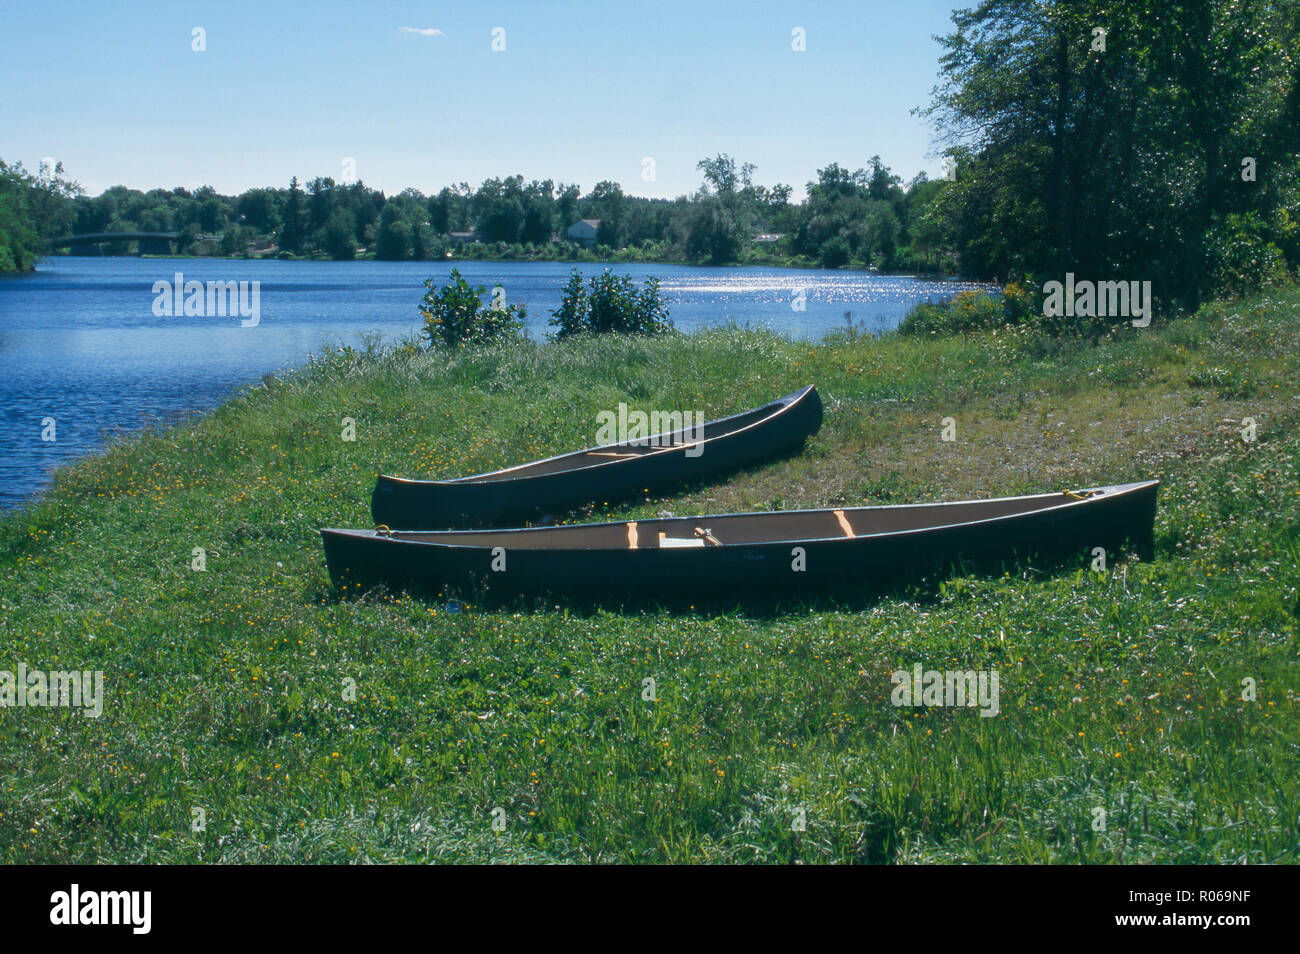 Kanus auf der indischen Insel, Penobscot Indian Reservation, Maine. Foto Stockfoto